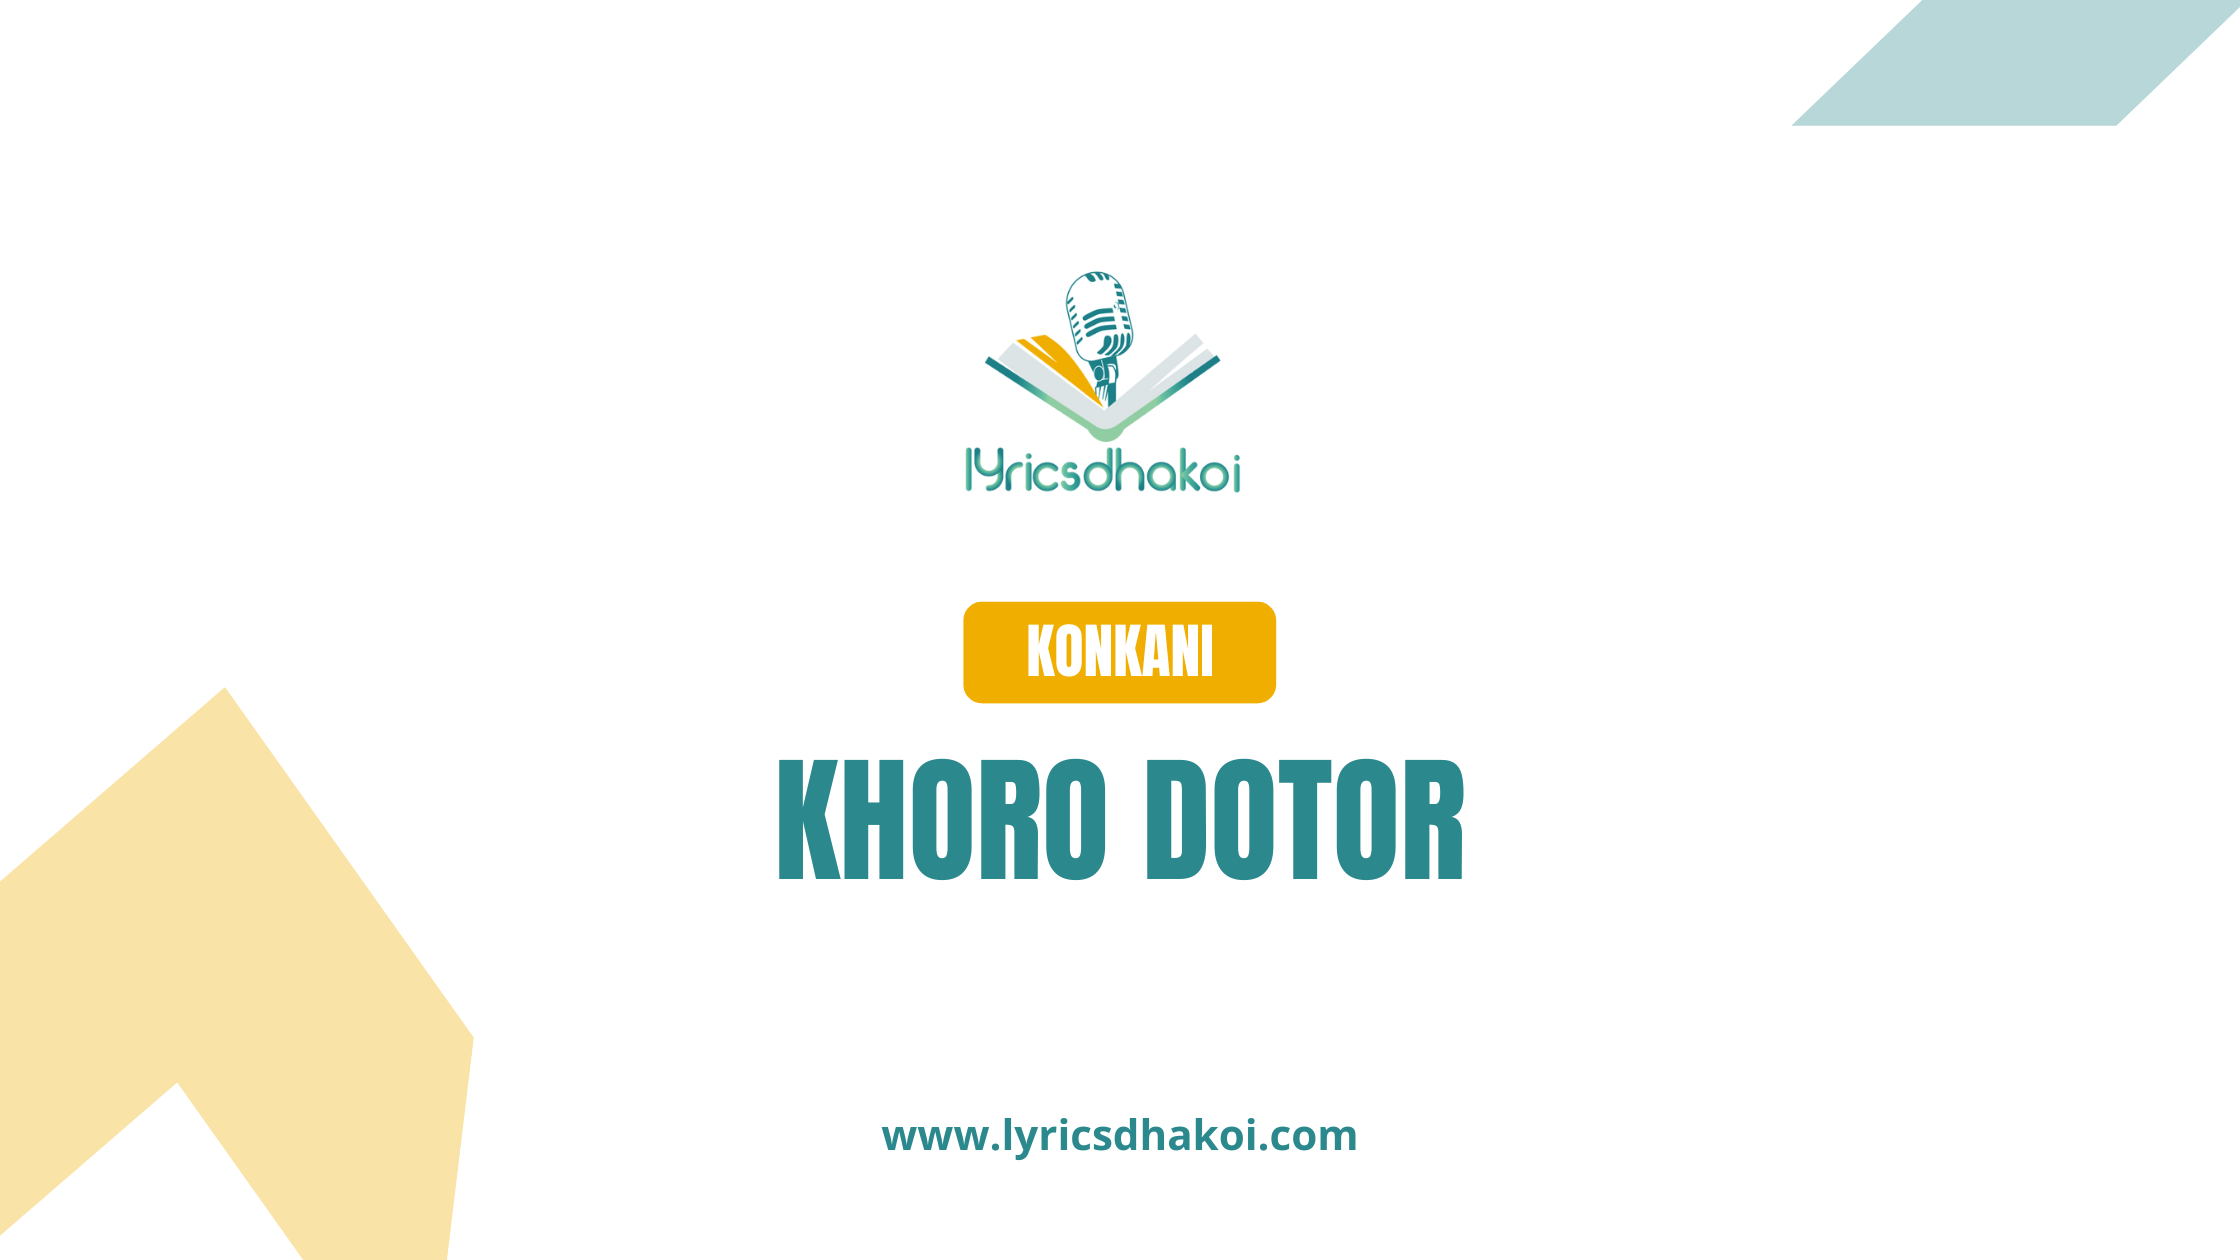 Khoro Dotor Konkani Lyrics for Karaoke Online - LyricsDhakoi.com